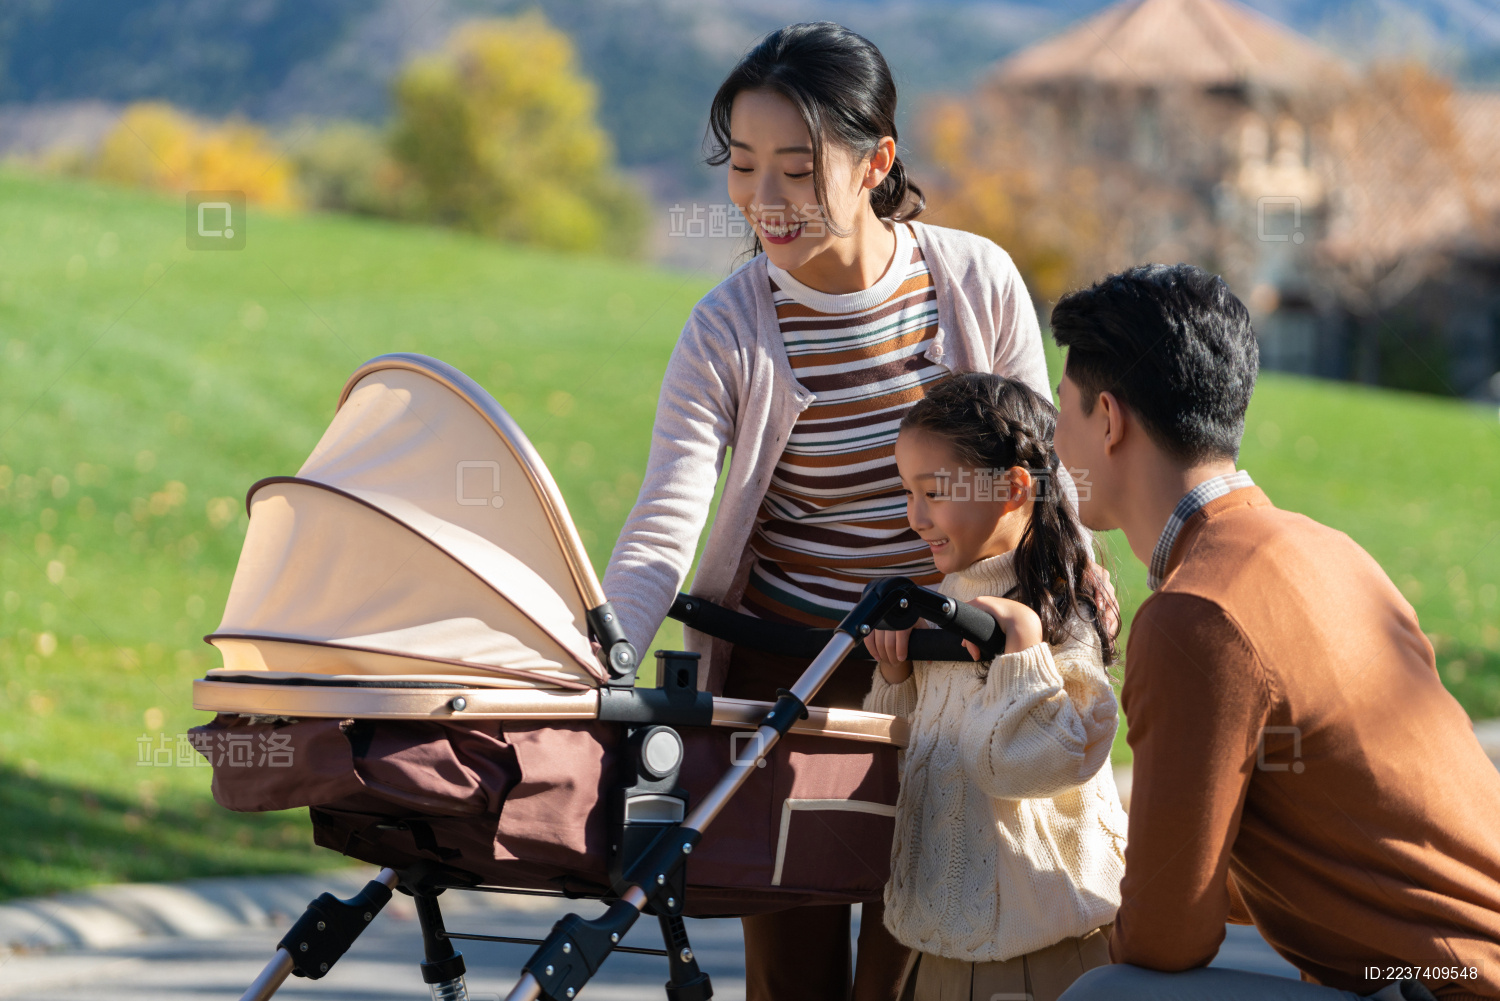 年轻家庭推着婴儿车散步-蓝牛仔影像-中国原创广告影像素材